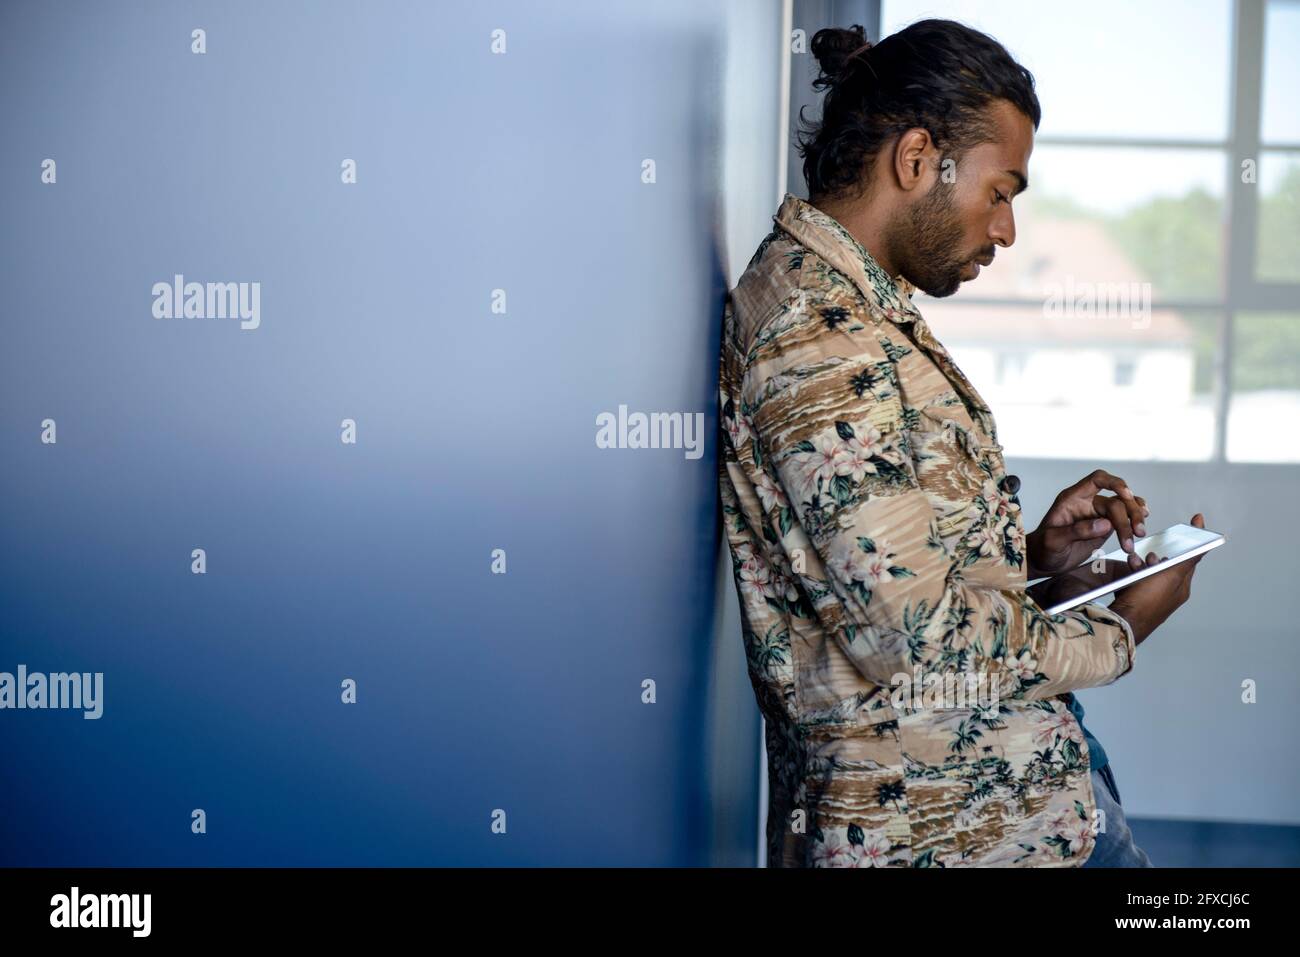 Mann in legerer Kleidung mit digitalem Tablet, während er sich an die Wand lehnt Stockfoto